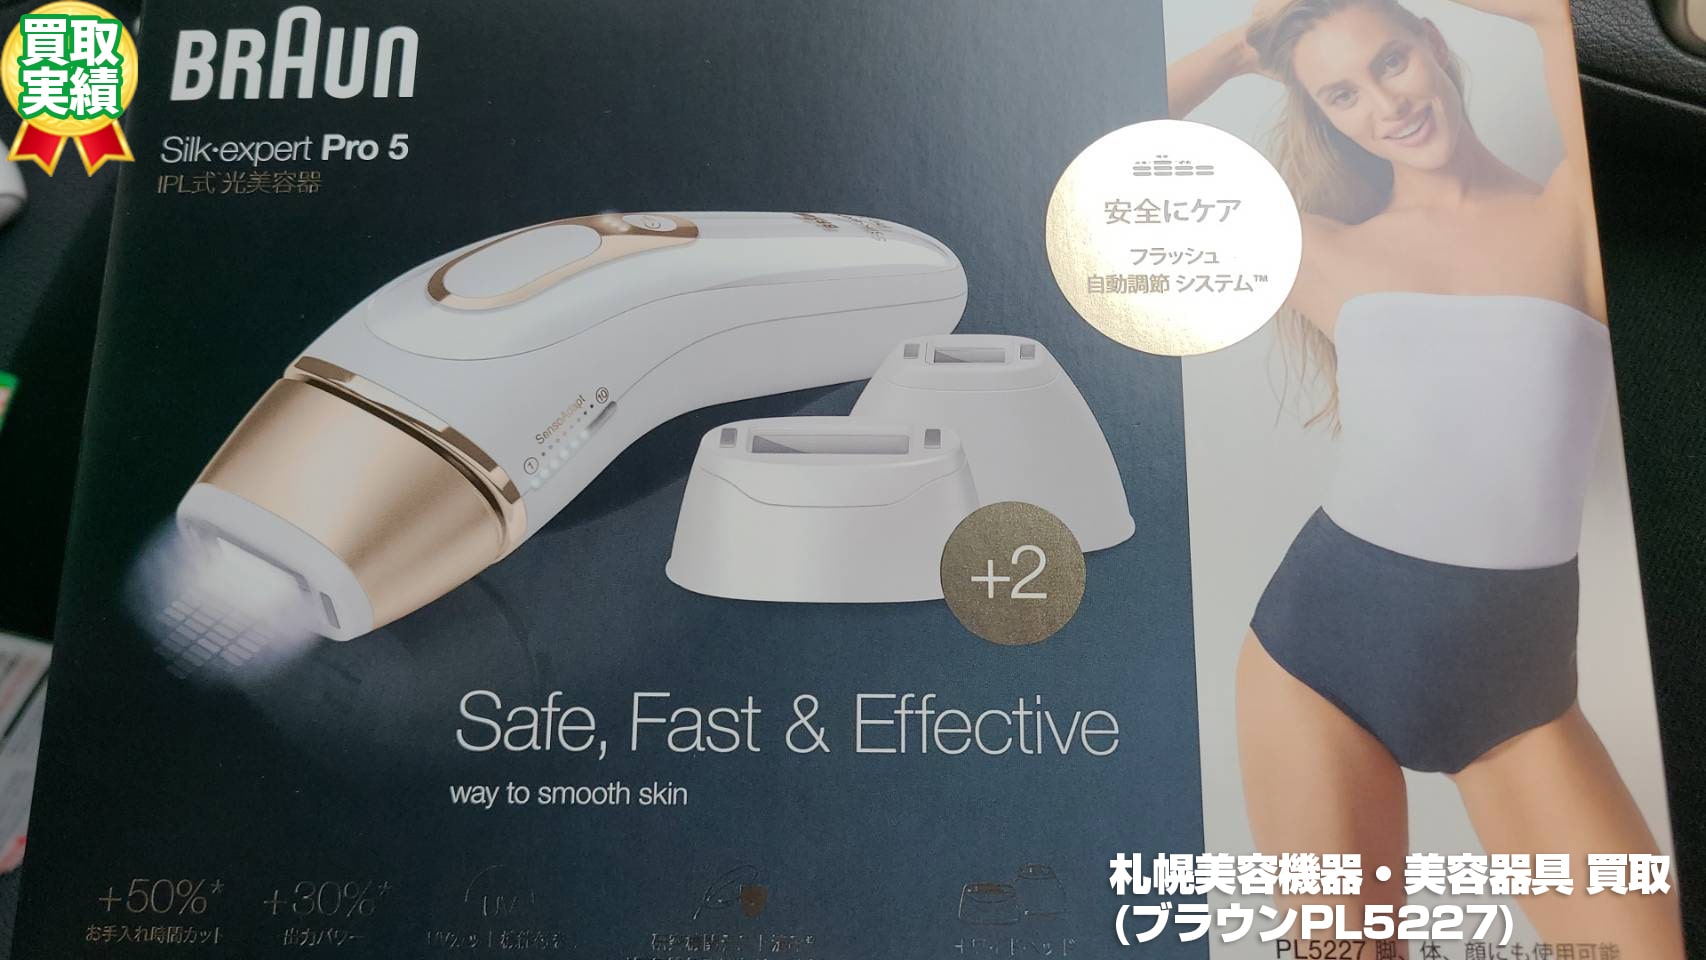 札幌美容機器・美容器具 買取(ブラウンPL5227・2021年8月)